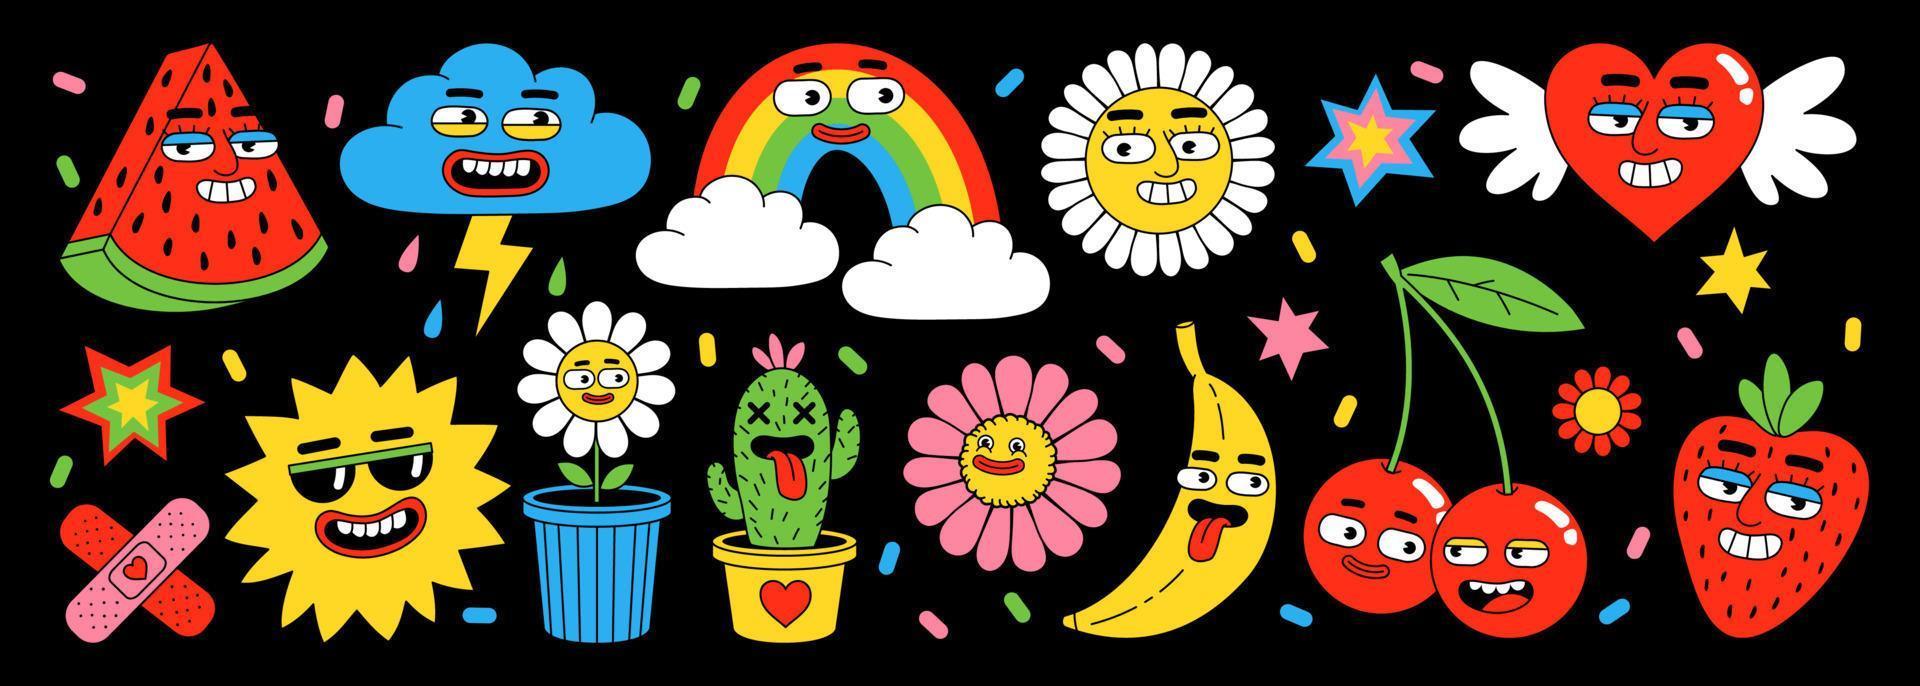 lustige Cartoon-Sticker-Packung. Herz, Früchte, Beeren, Regenbogen, Wolken, abstrakte Gesichter. vektor